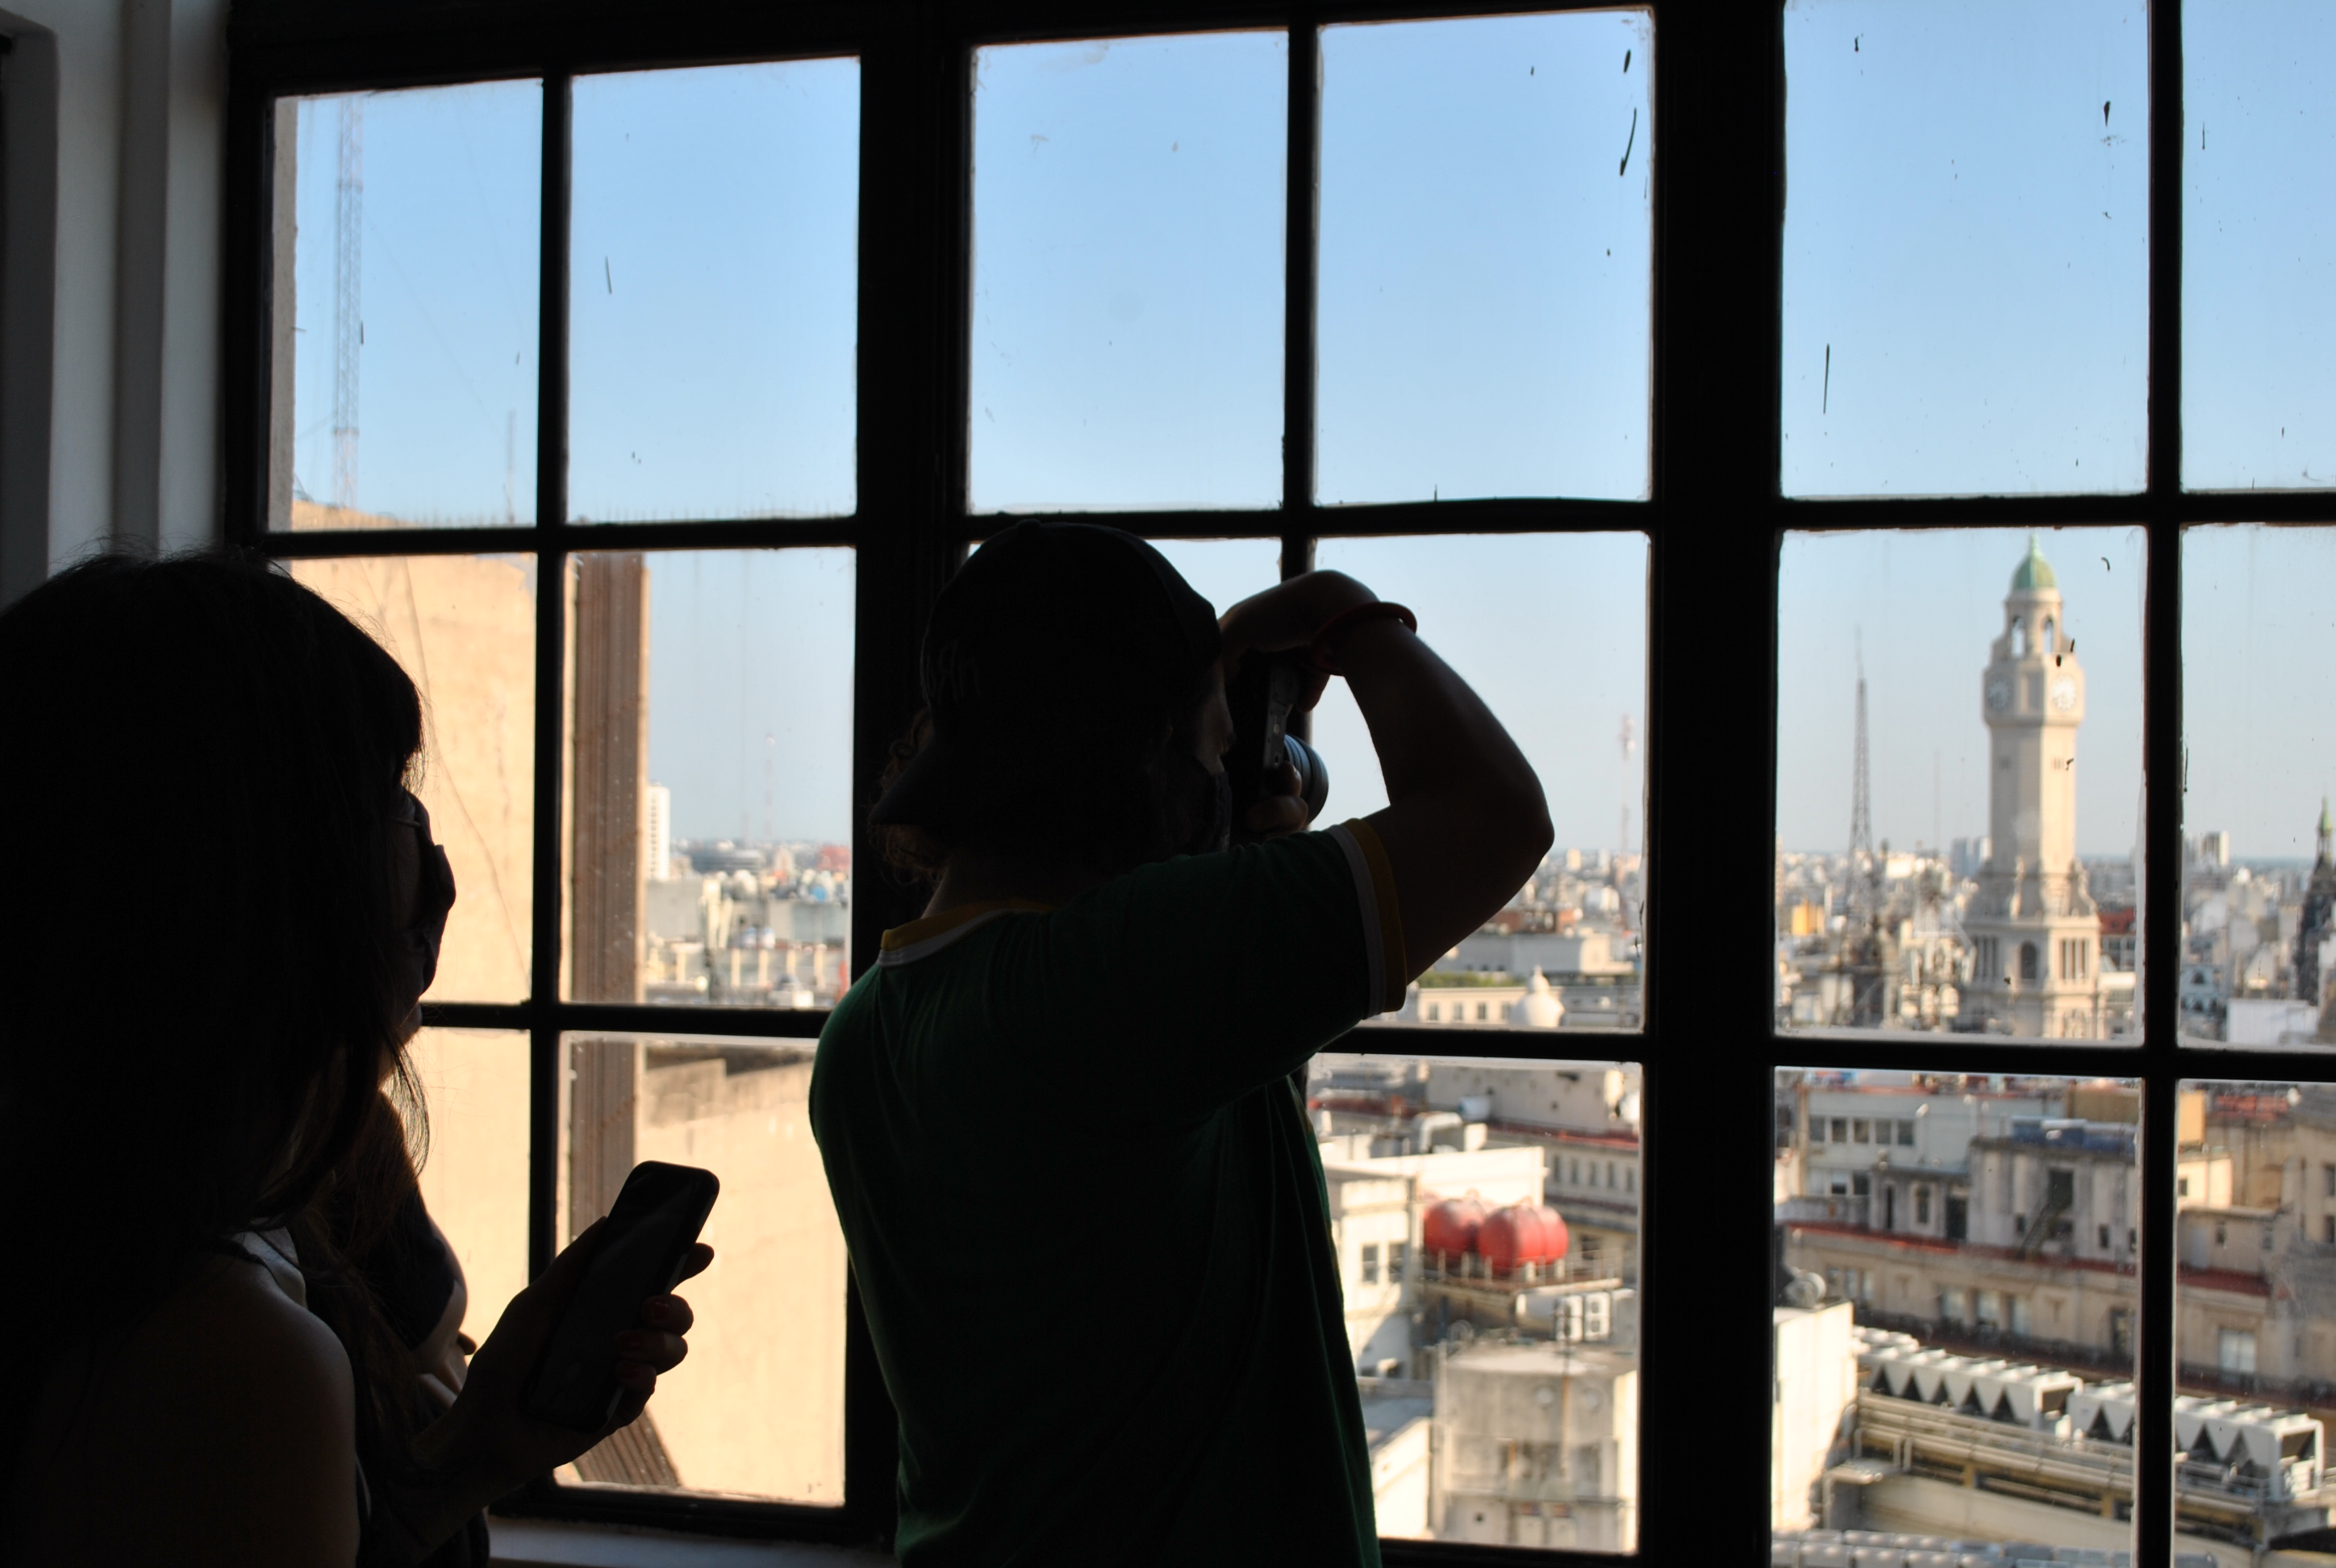 Personas mirando cupulas de edificios desde una ventana